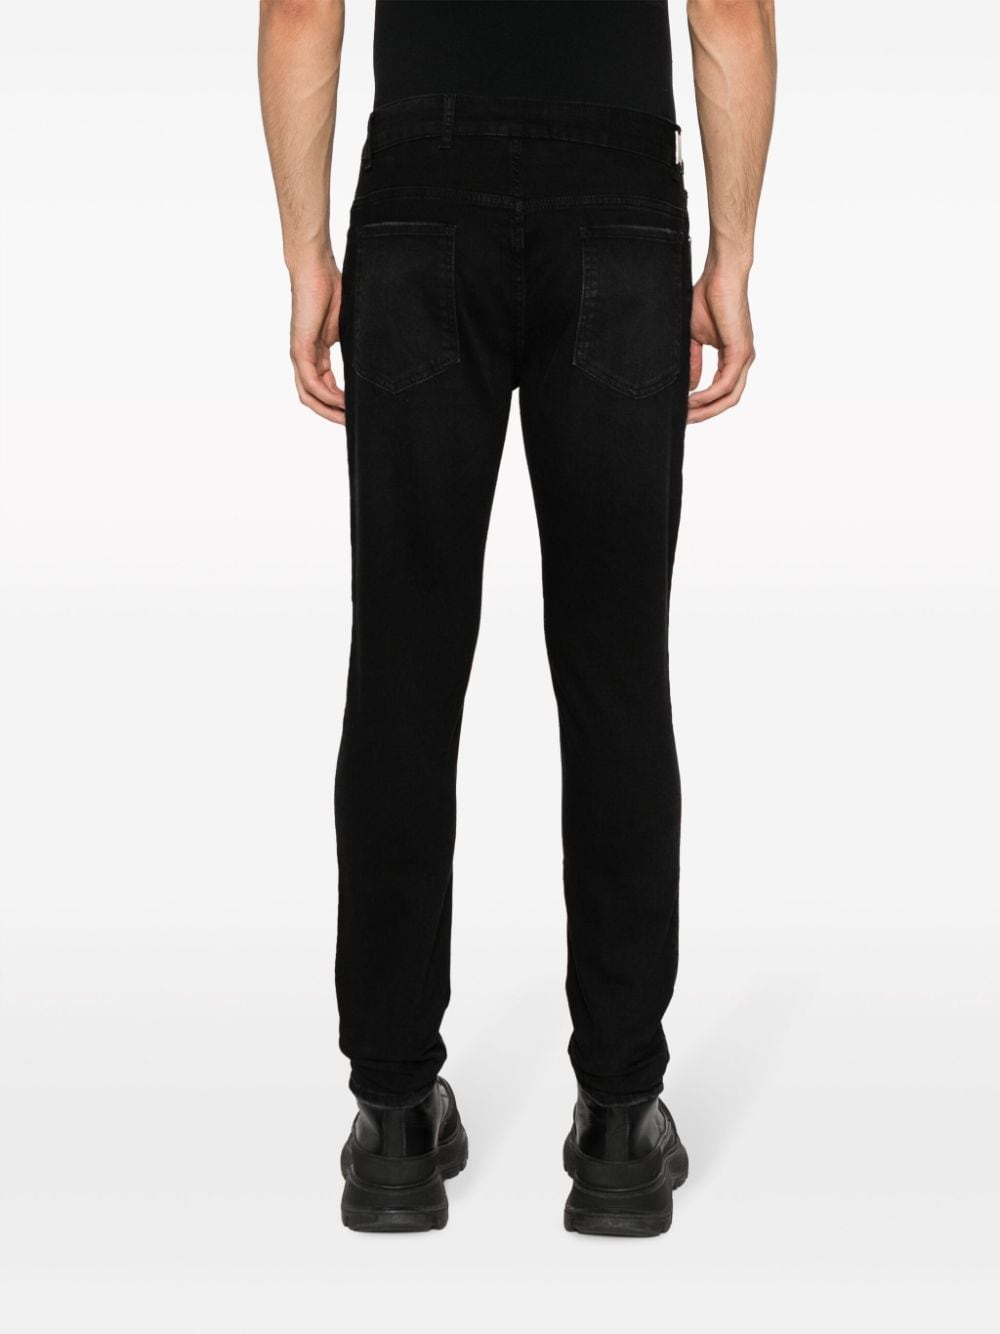 Jeans R1 Essential slim in nero - uomo REPRESENT | ME600201